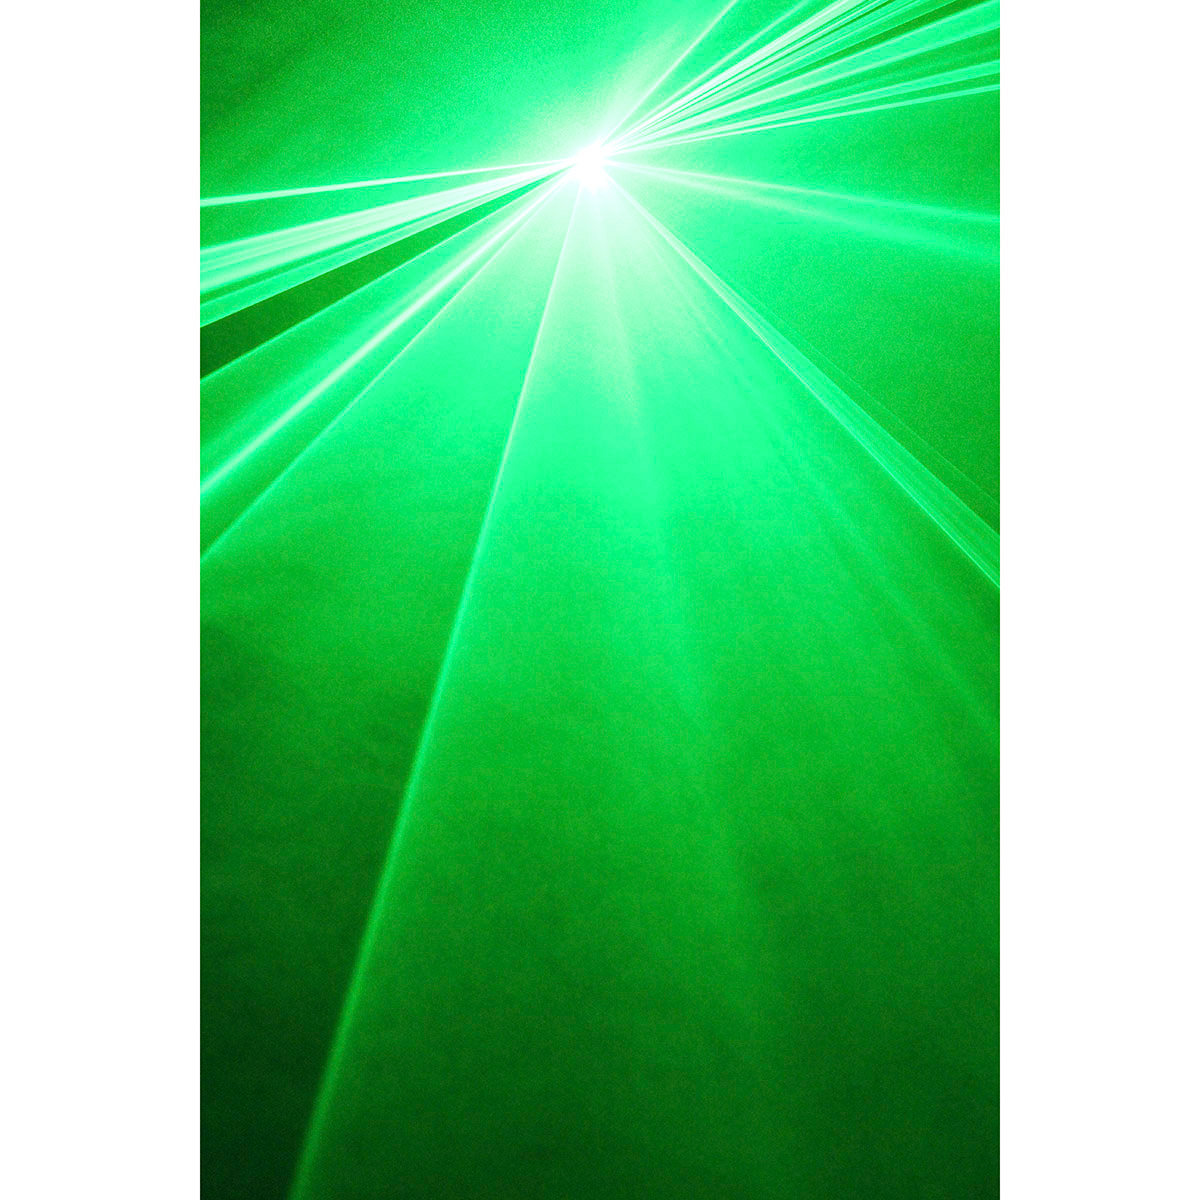 MACHINE LASER VERT - KUB 80 GREEN - BOOMTONE DJ : Laser Vert sur